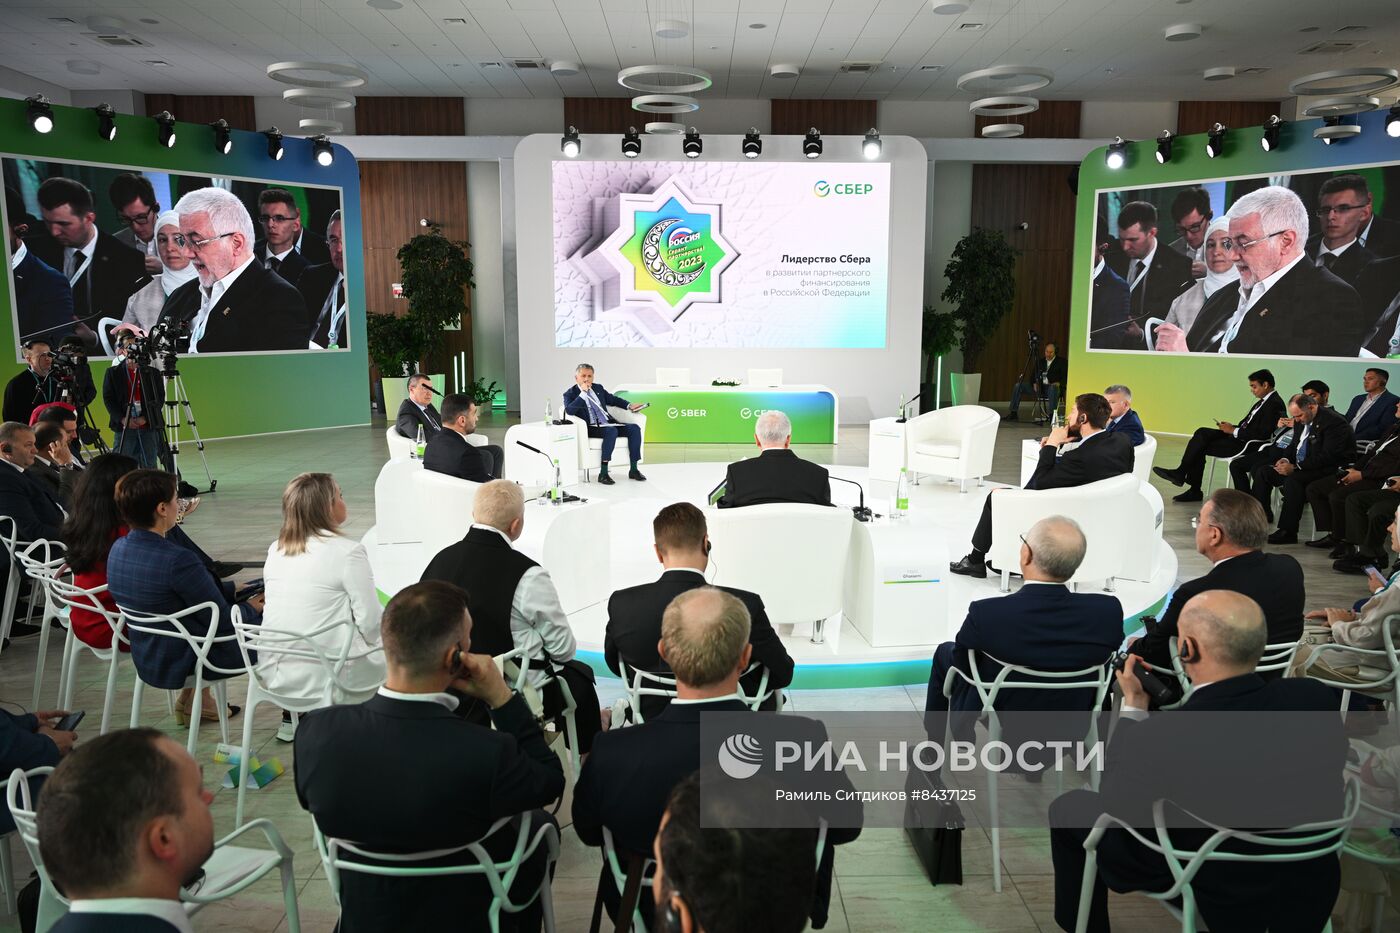 KAZANFORUM 2023. Лидерство сбера в развитии партнерского финансирования в РФ